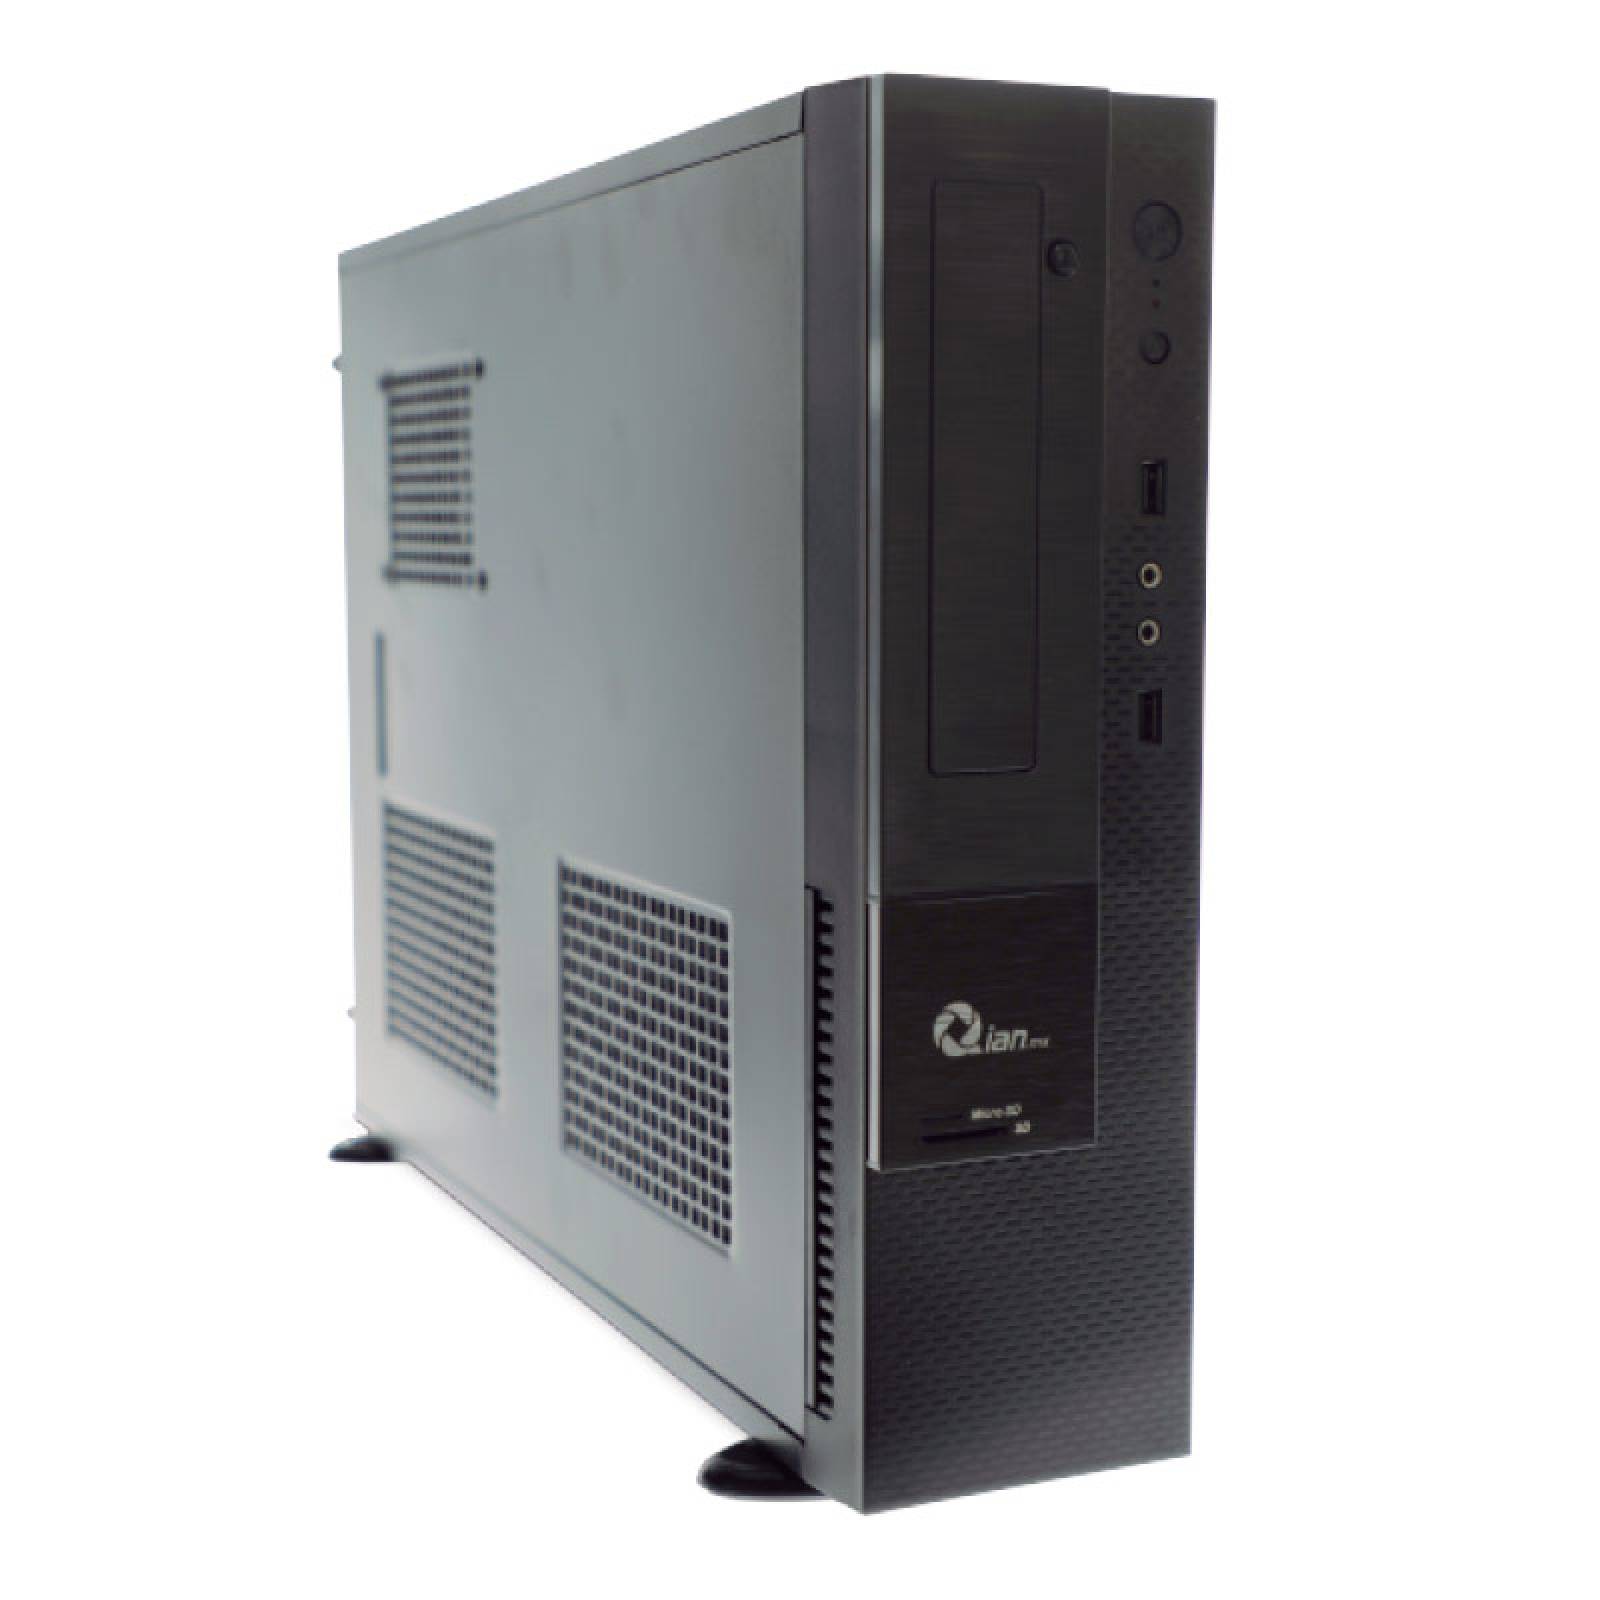 COMPUTADORA DE ESCRITORIO QIAN SLIM BAO Q7001, INTEL CORE I7-7700 4.20GHZ, 8GB RAM, 1TB, DVD W10 PRO (QCS1714)